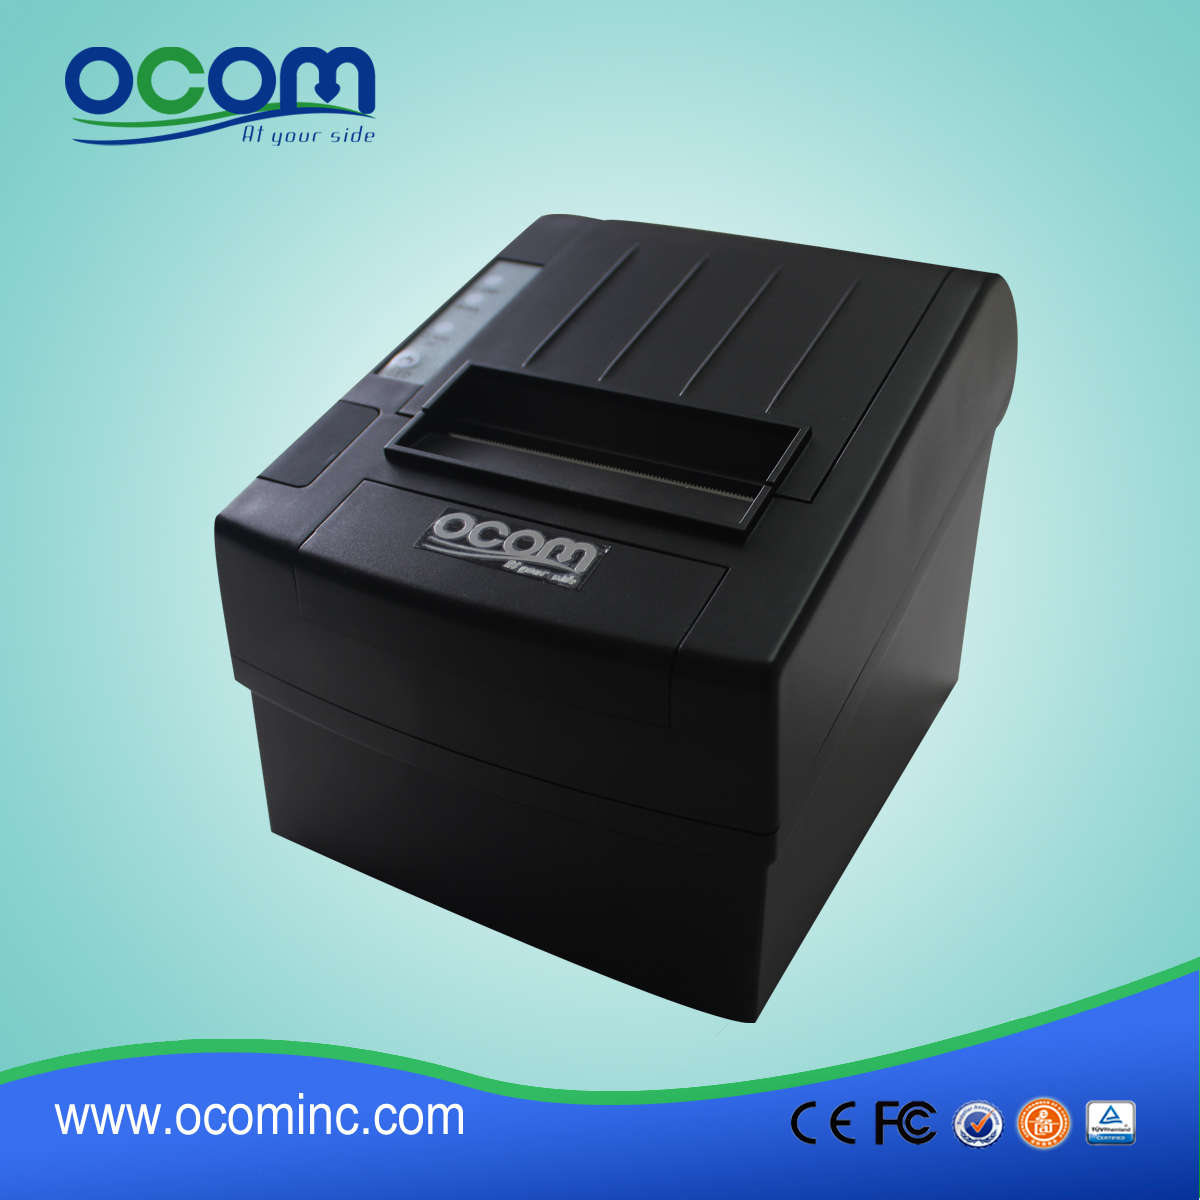 3 inch Android 1D en QR code thermische printer - OCPP-806